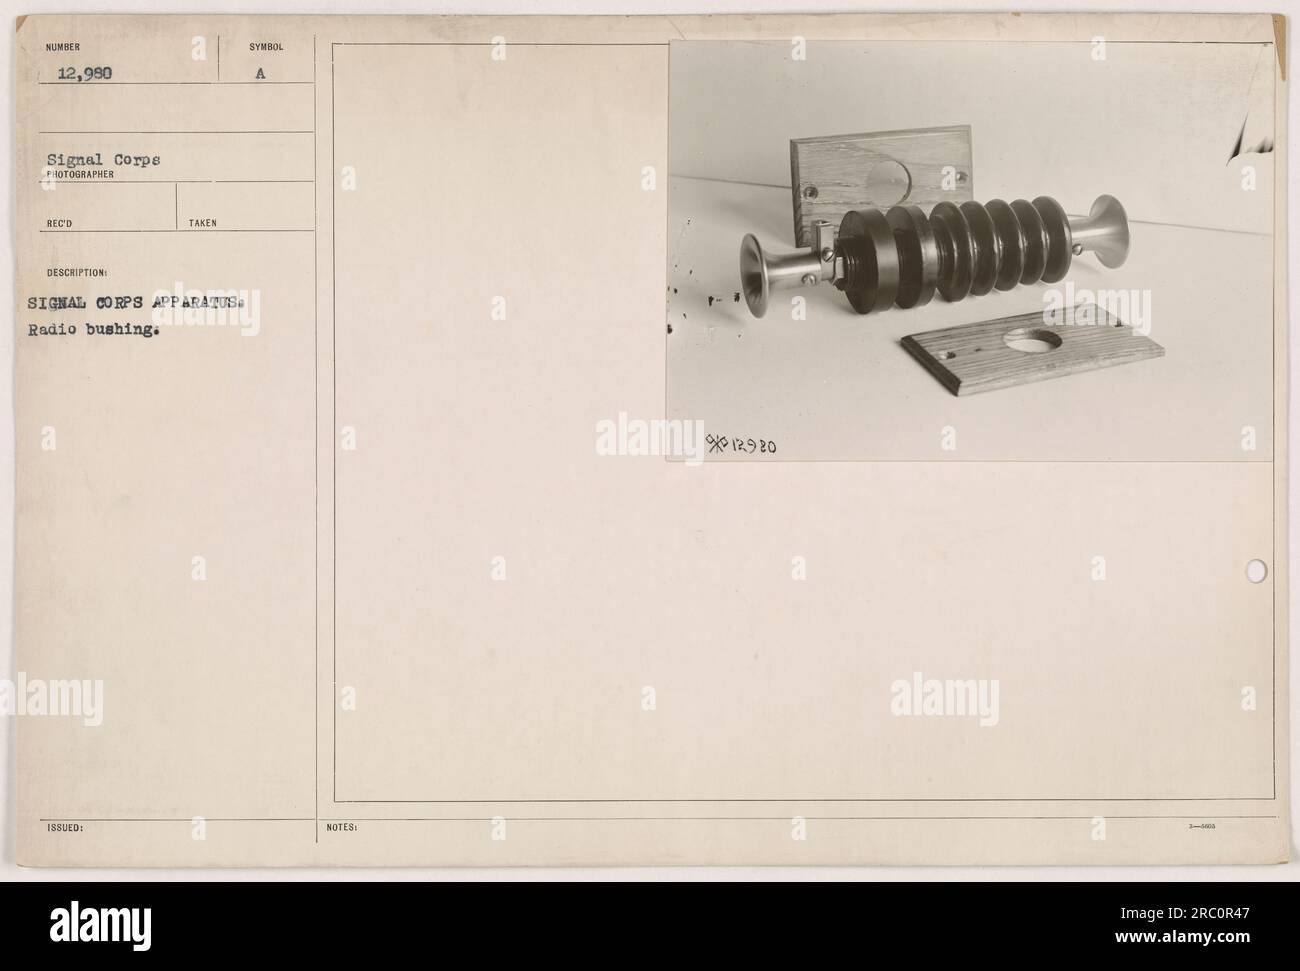 Dieses Bild zeigt eine Funkbuchse, die Teil des Signalkorps-Apparates war, das während des Ersten Weltkriegs verwendet wurde. Das Foto wurde vom Fotografen Reco aufgenommen und erhielt die Kennnummer 12.980. Stockfoto